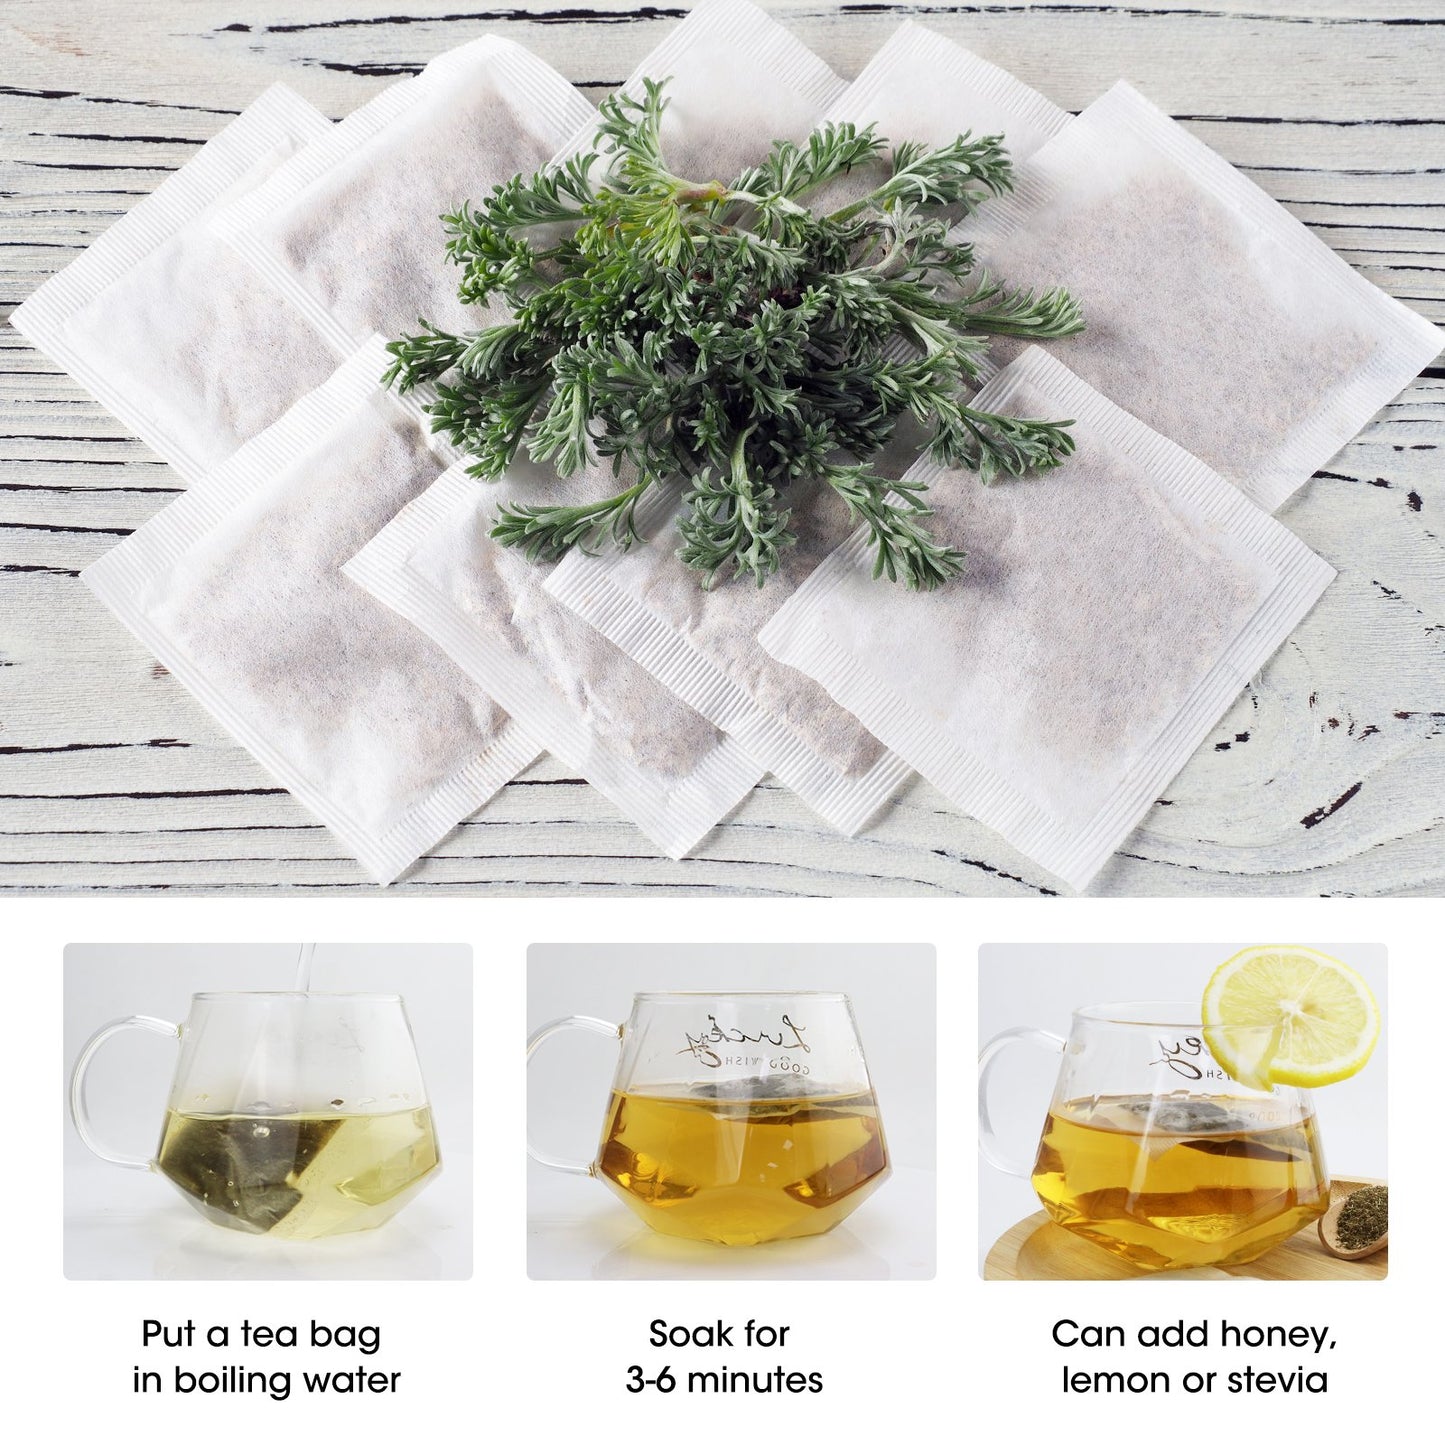 Mugwort Tea Bags -  Natural Artemisia Vulgaris Herb